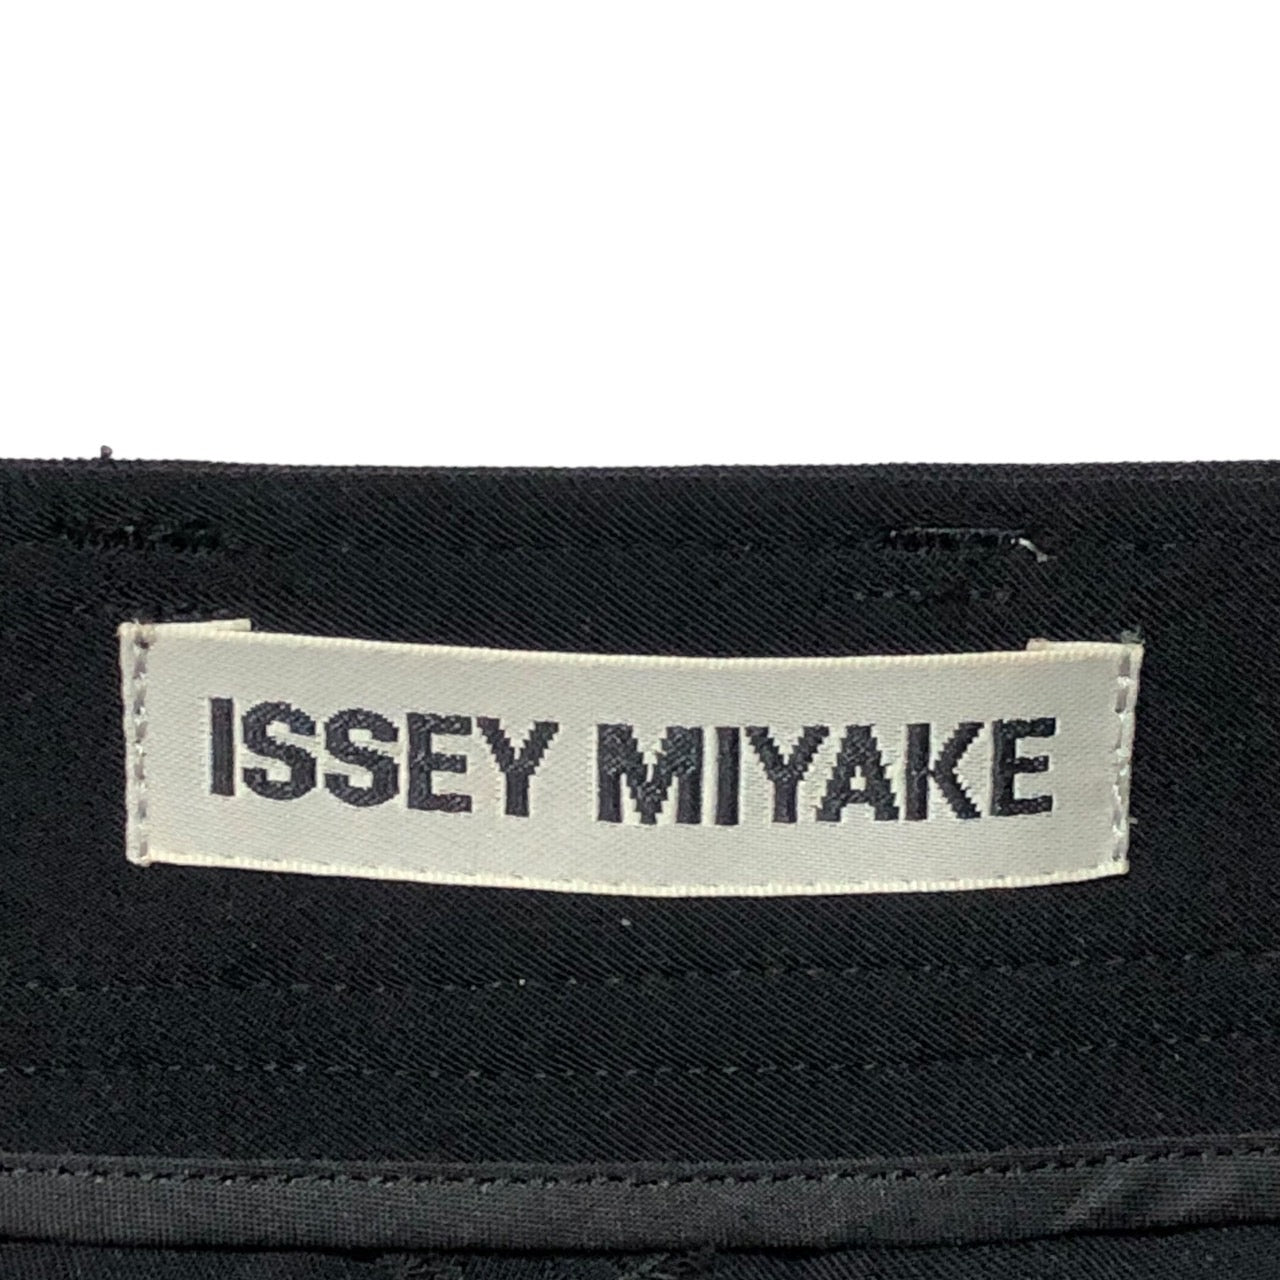 ISSEY MIYAKE(イッセイミヤケ) 90'sストレッチパンツ IM01FF057 SIZE 1(S) ブラック 銀タグ 裾ジップ仕様